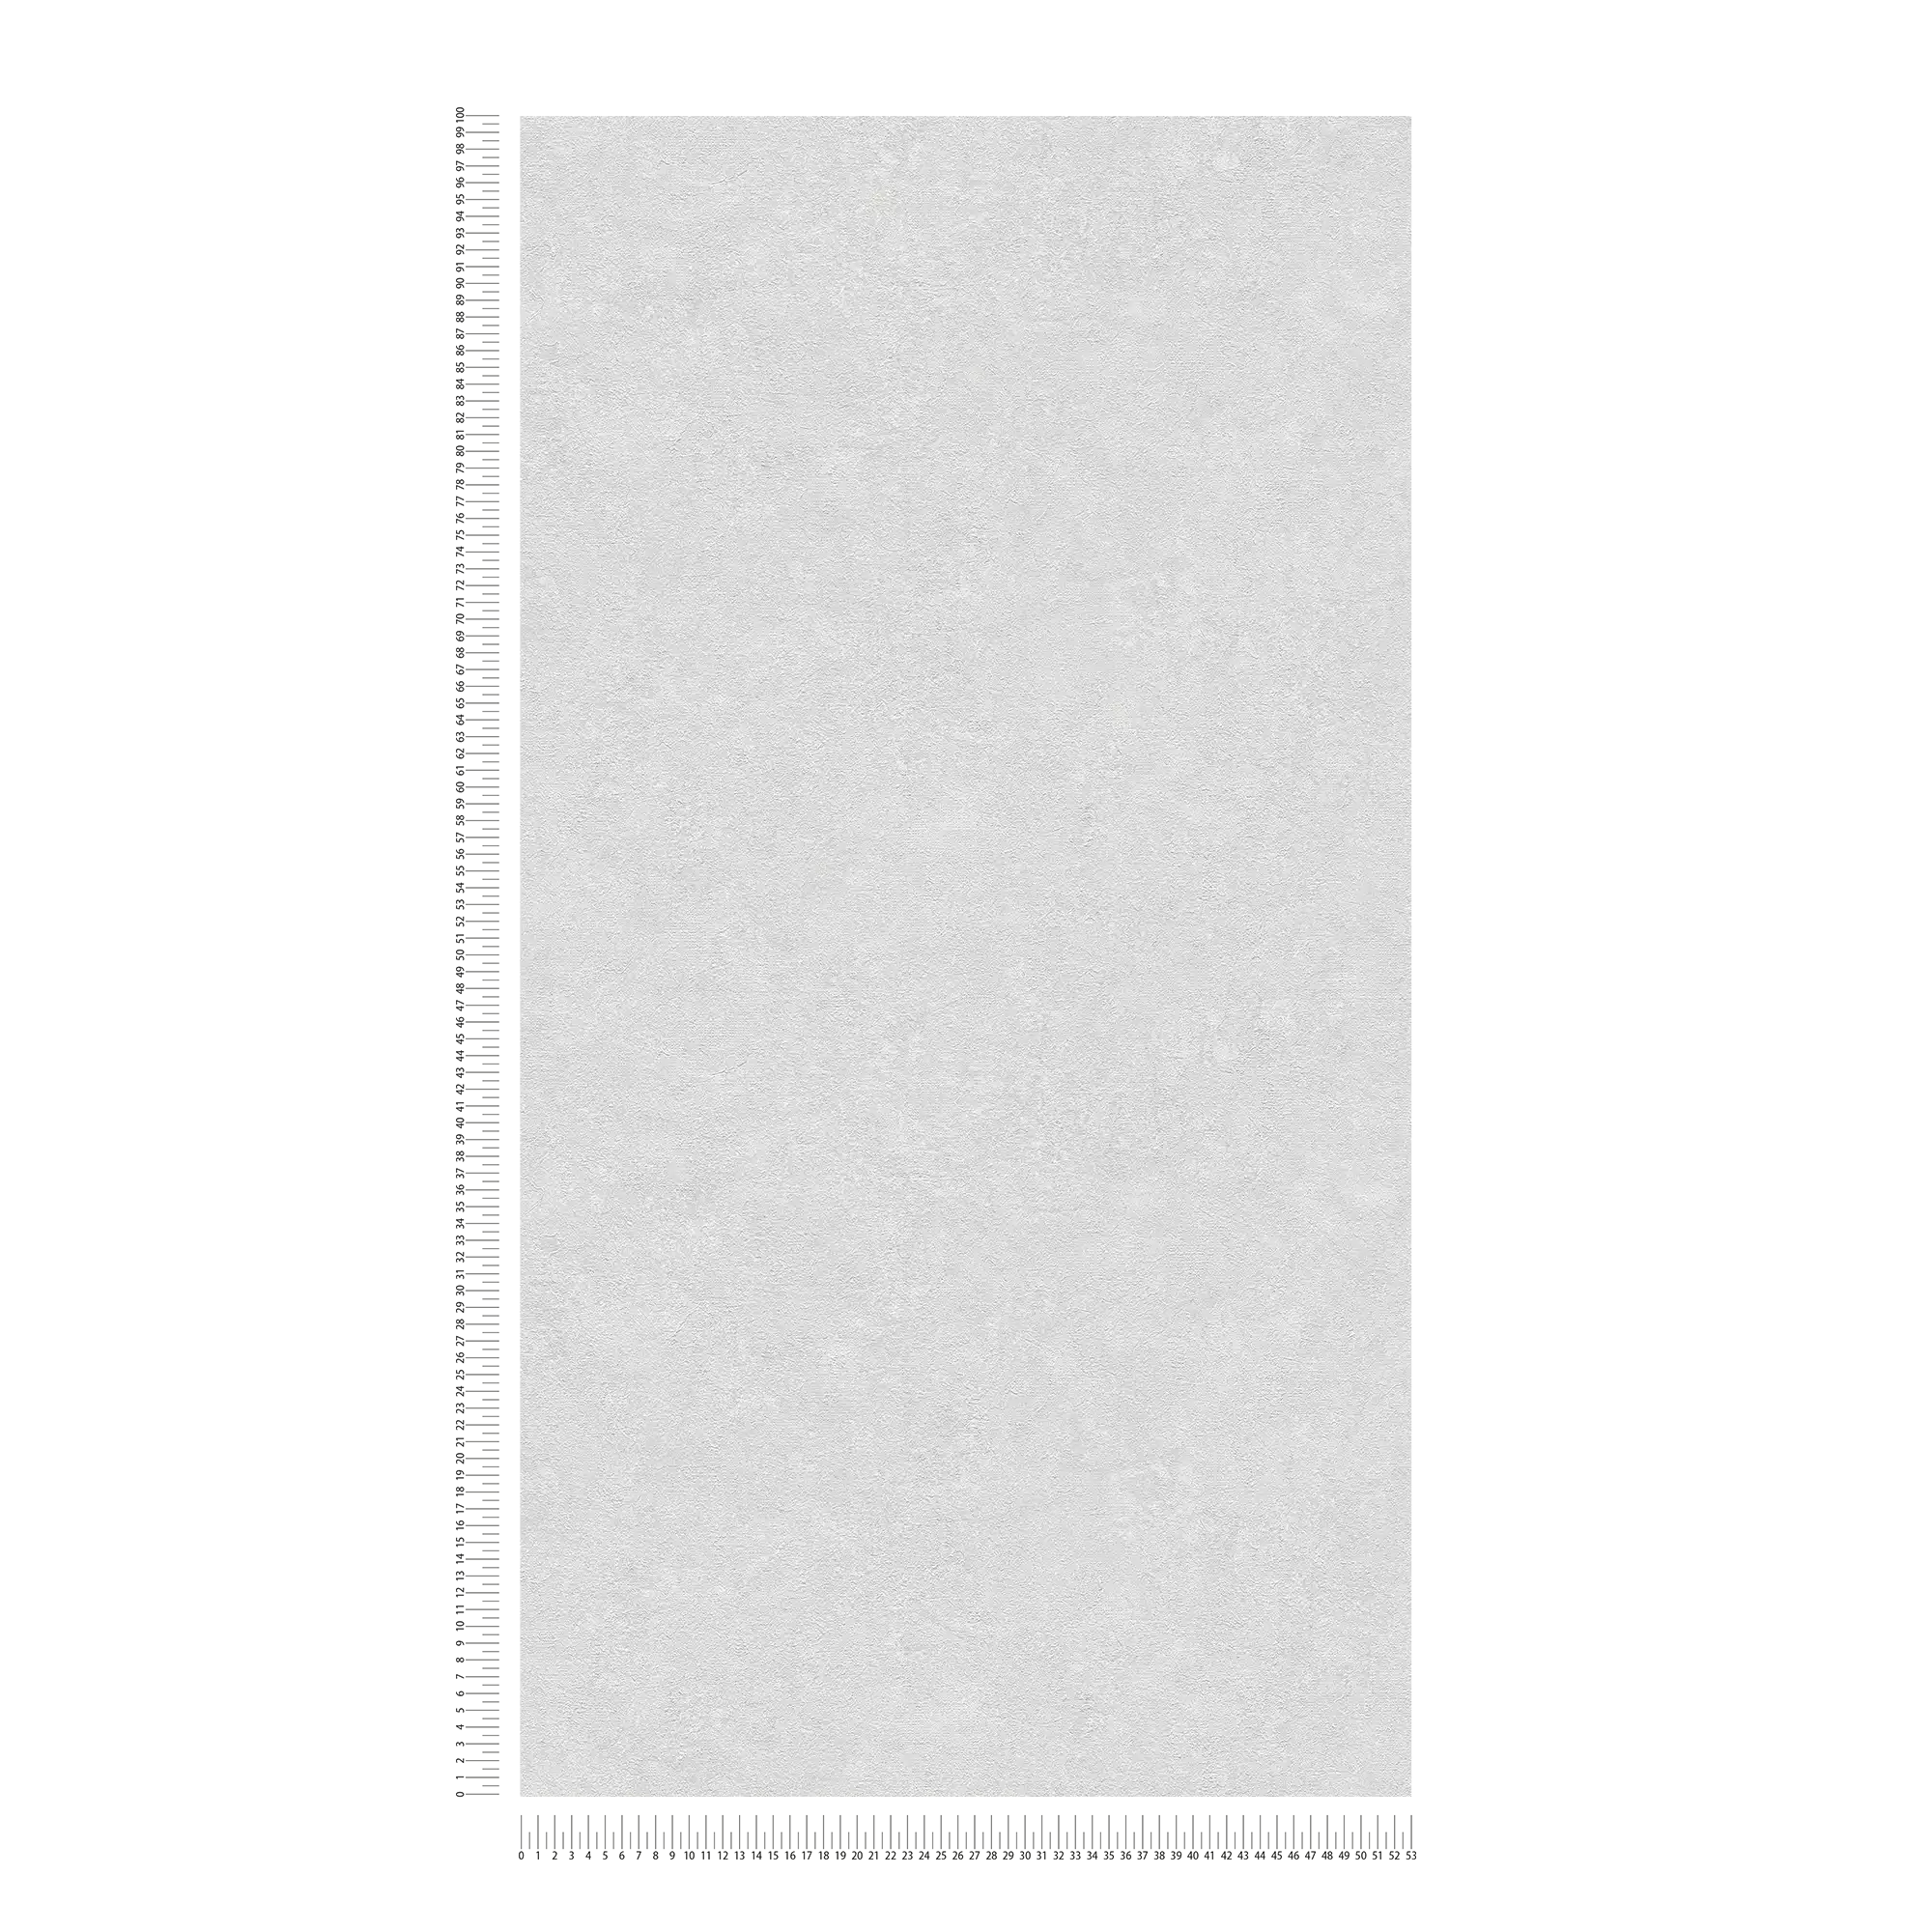             Papier peint uni aspect plâtre - gris, blanc
        